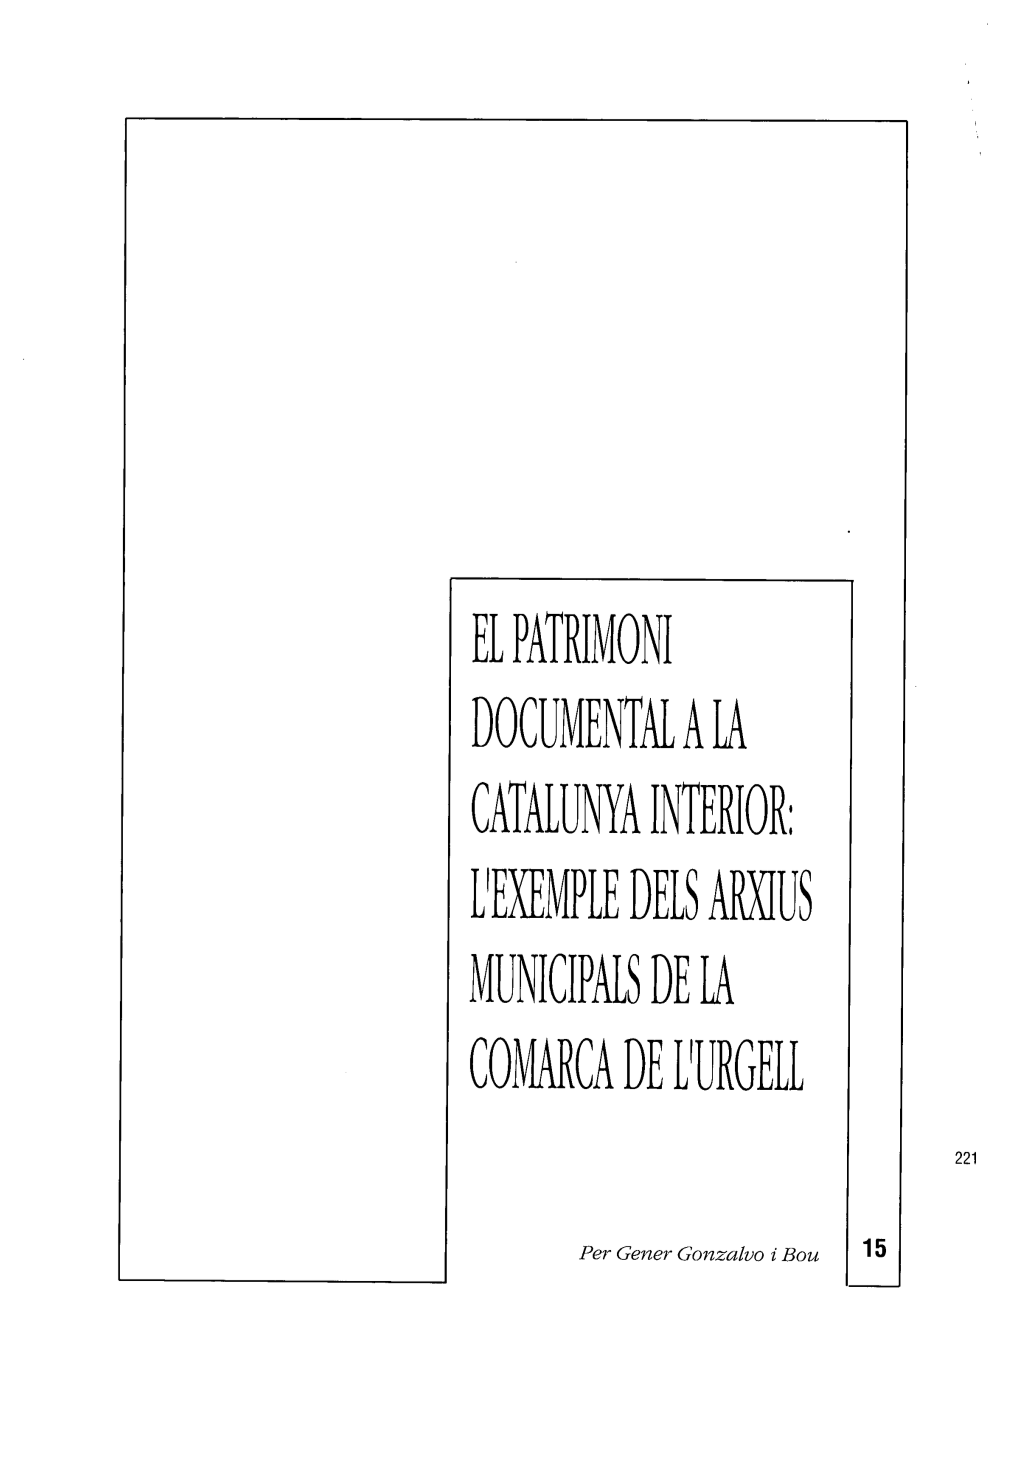 Arxiu~ Municipal~ De La Comarca De L'urgell